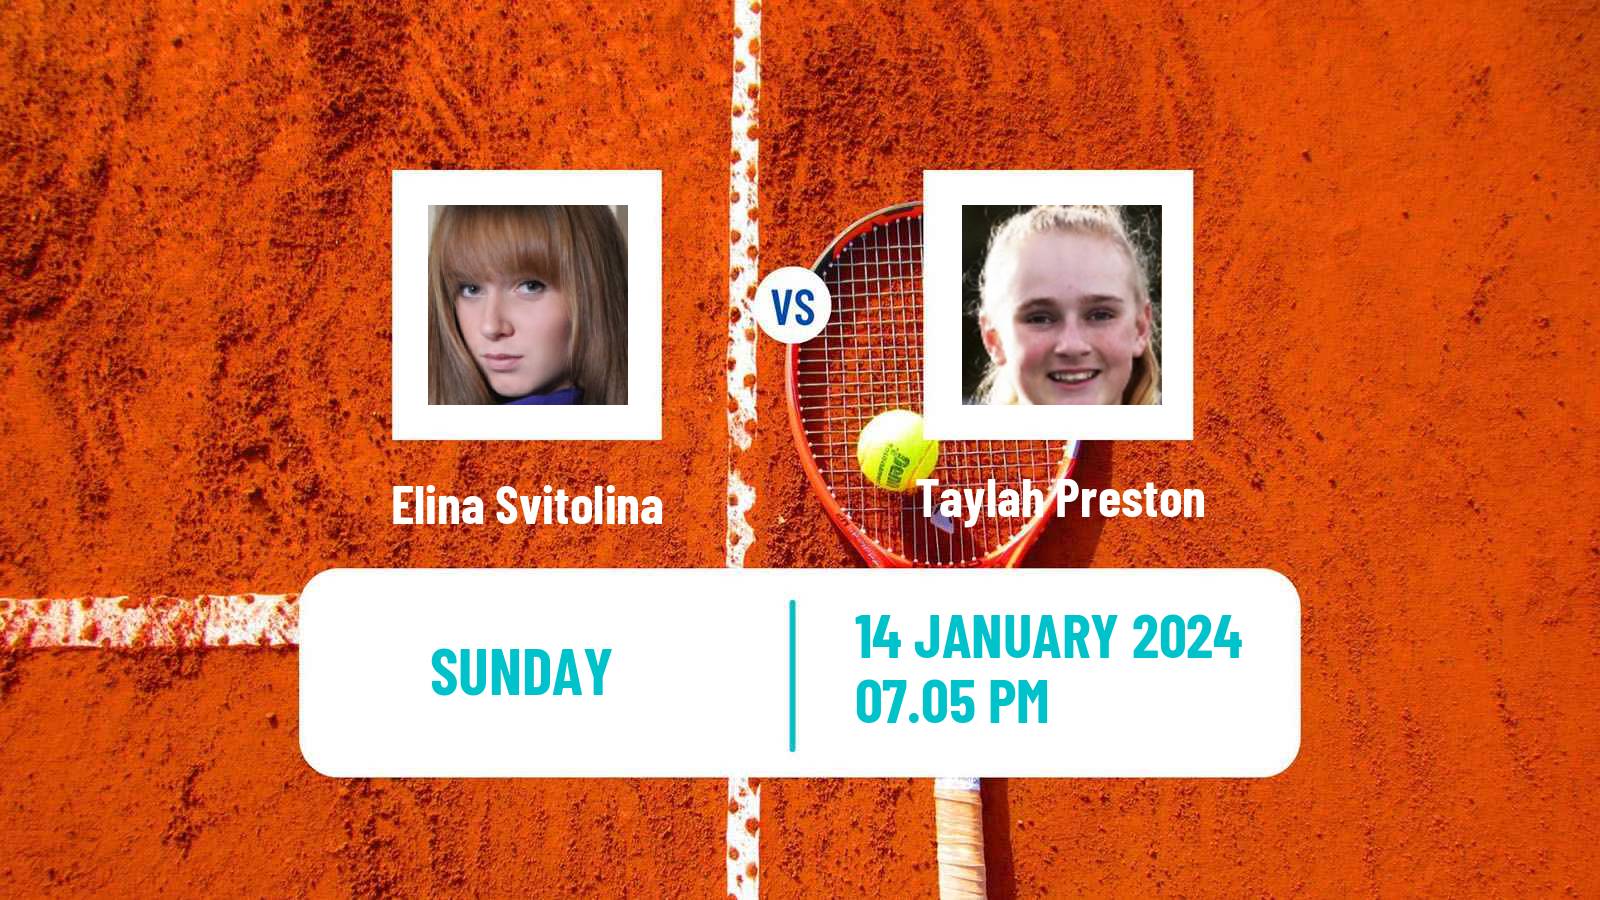 Tennis WTA Australian Open Elina Svitolina - Taylah Preston